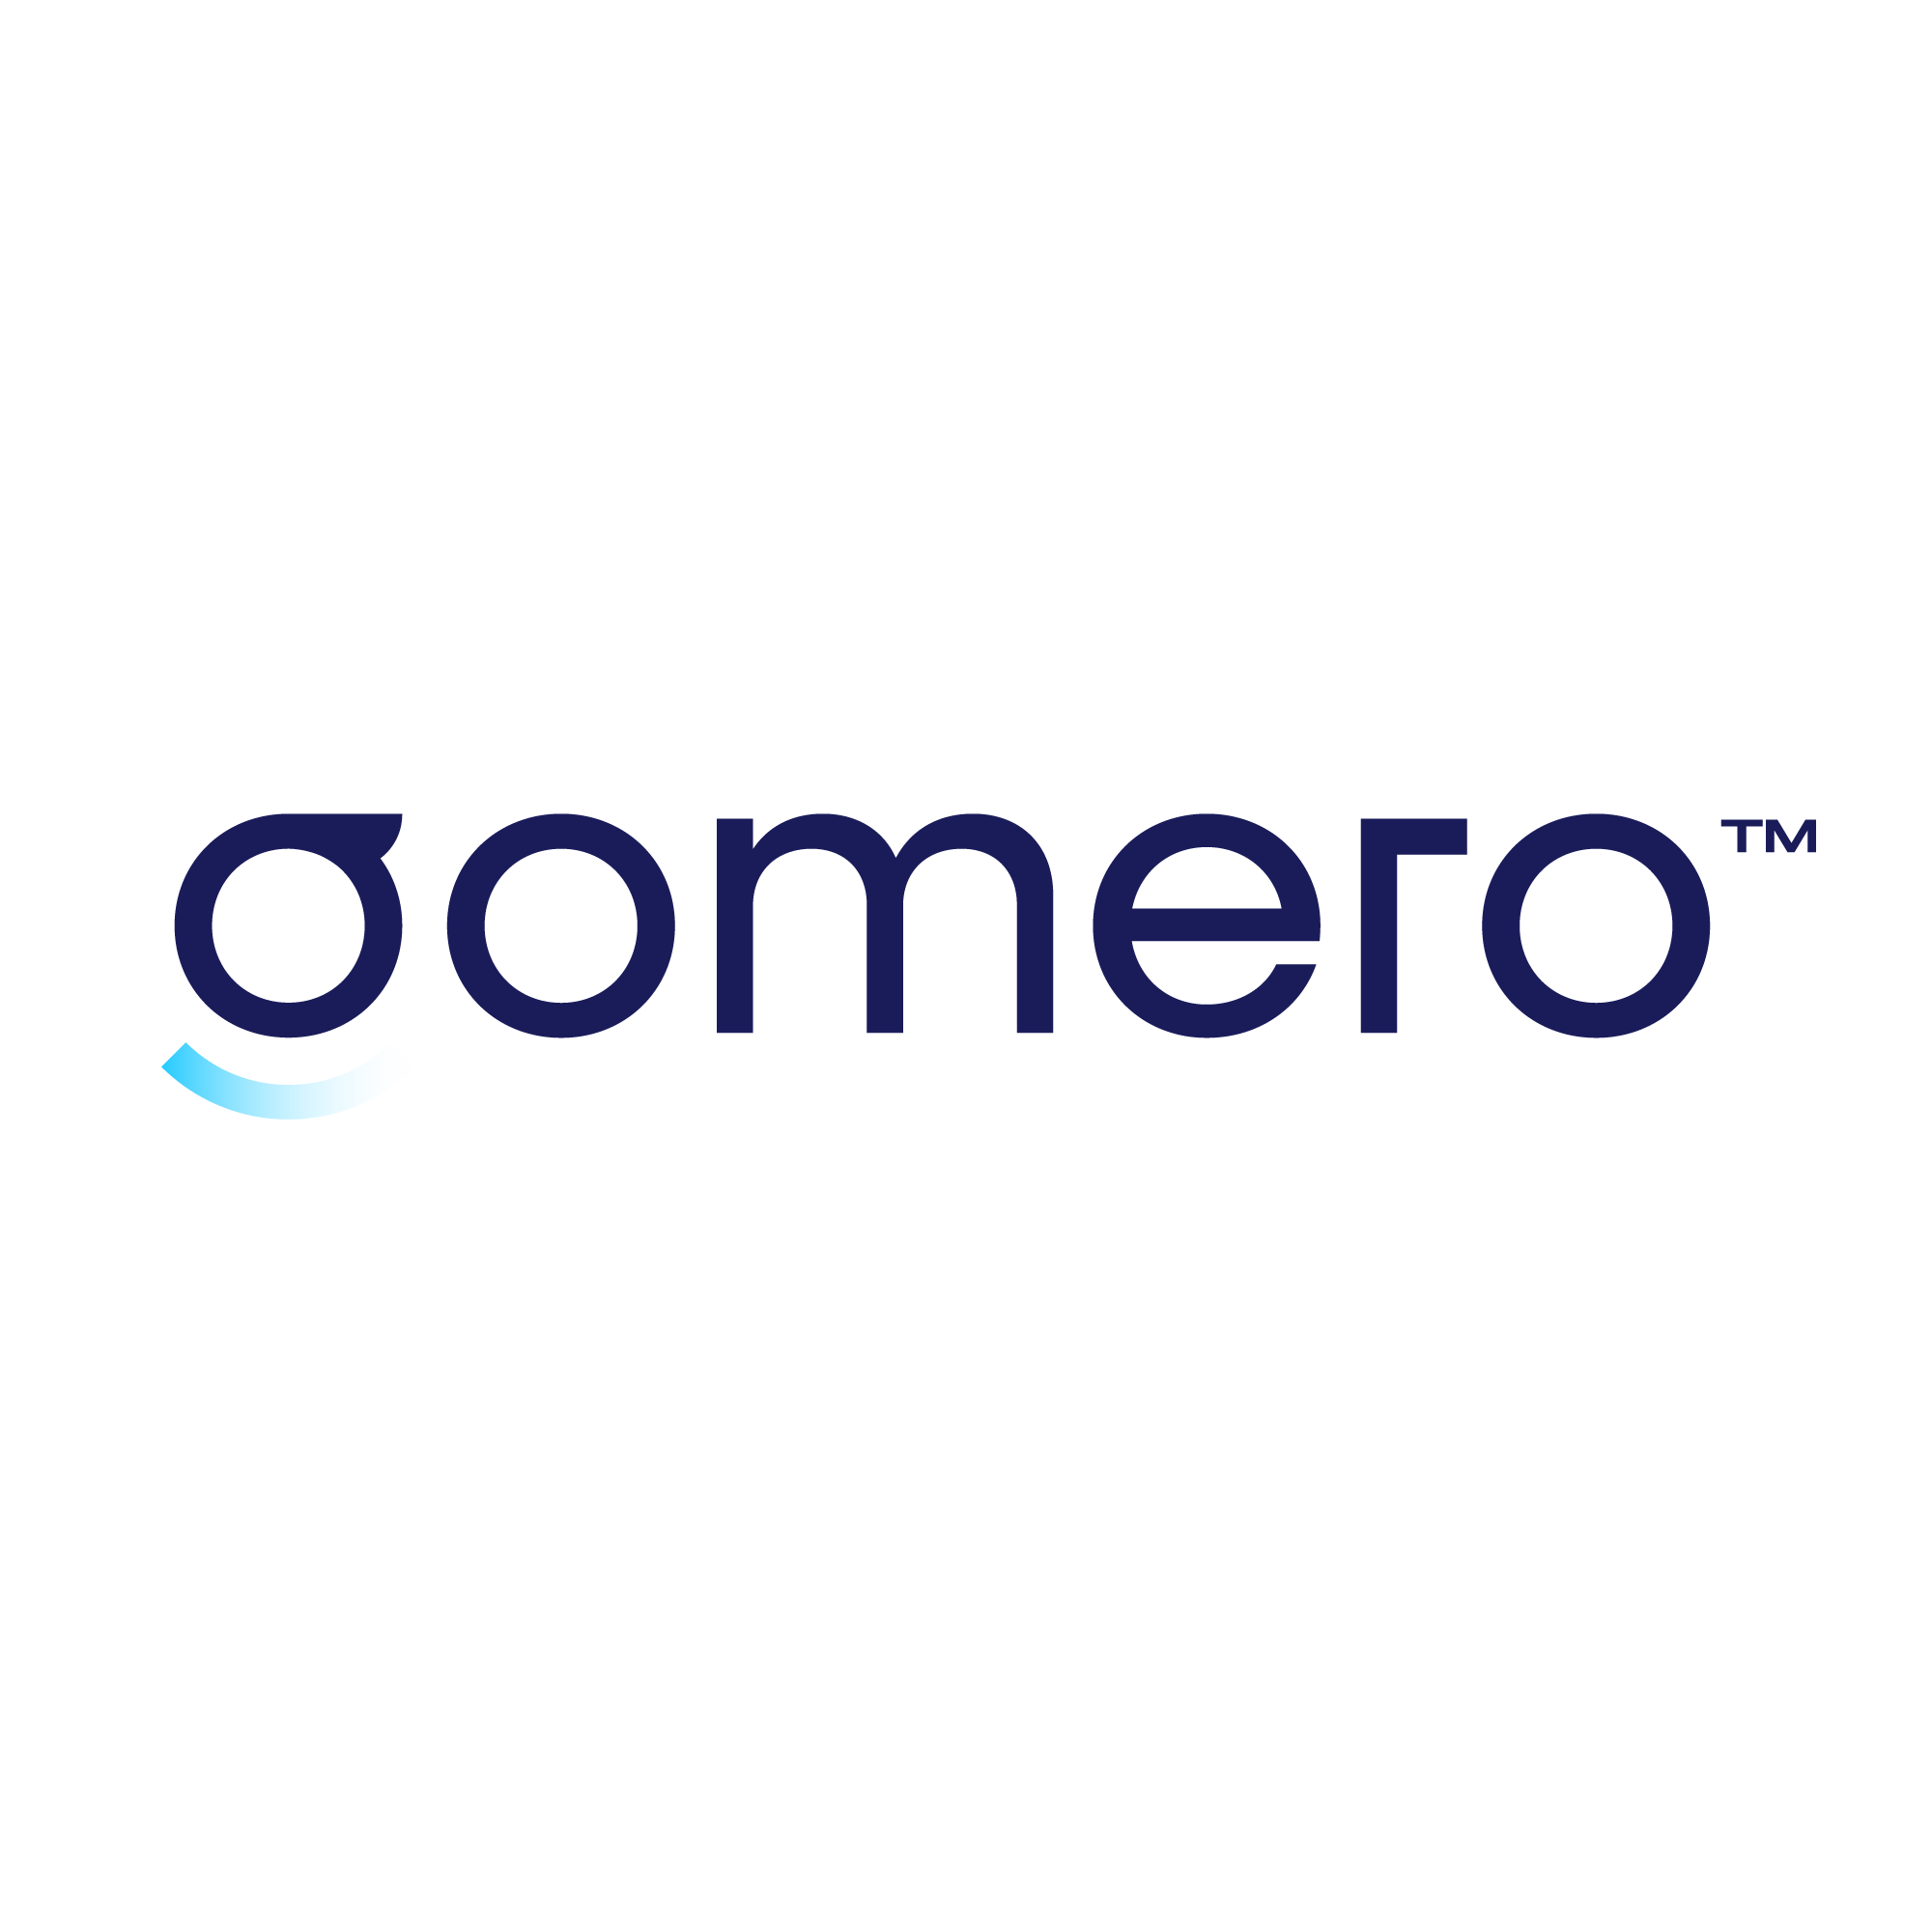 Gomero company logo